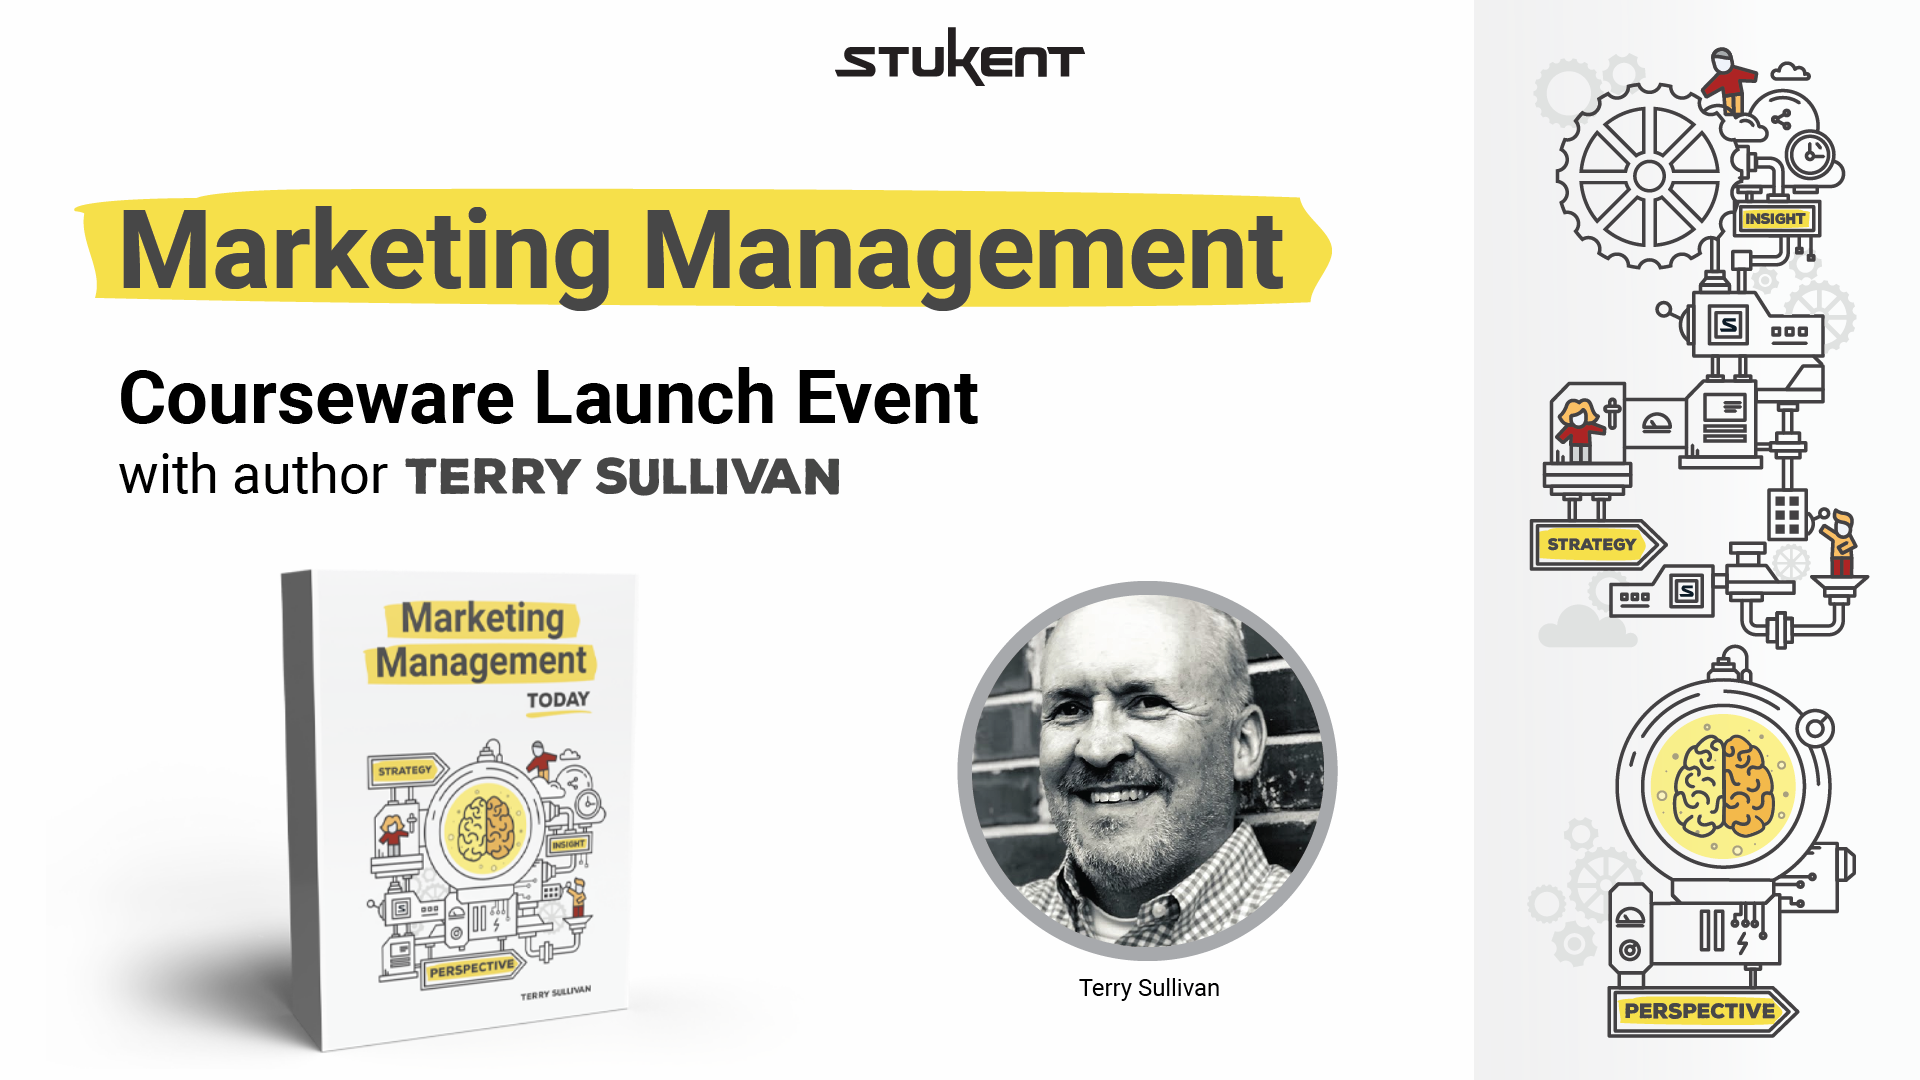 Marketing Management Courseware Launch